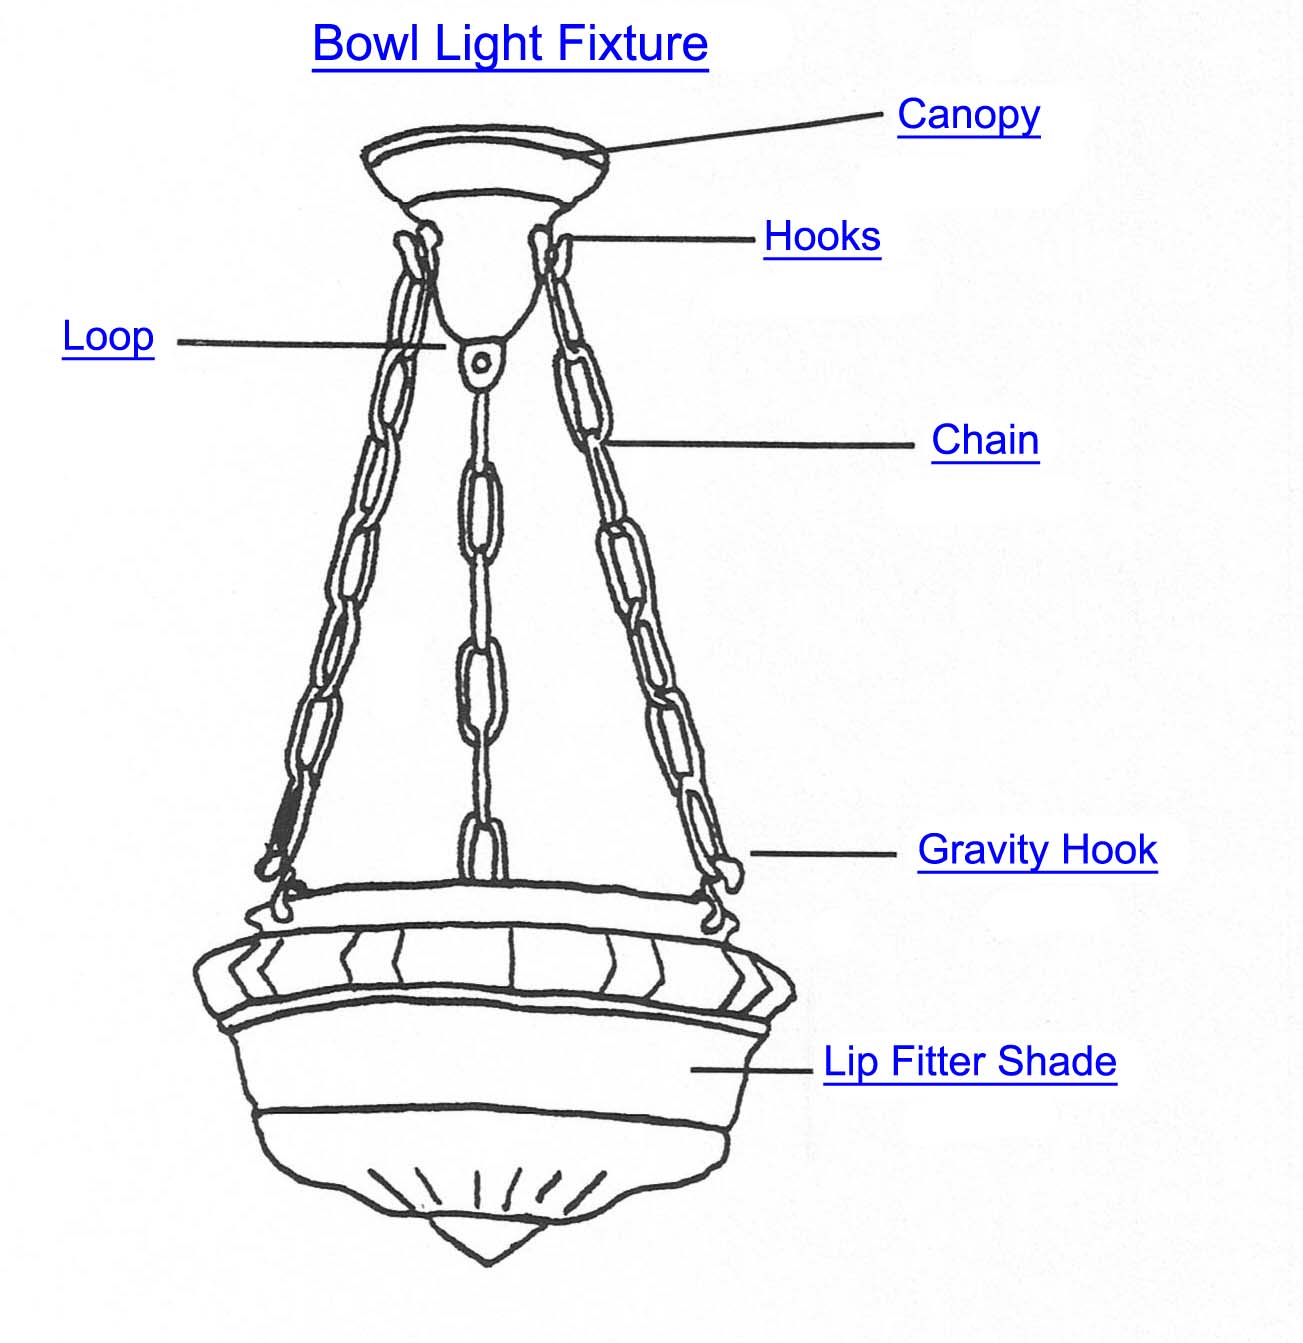 Bowl Light Fixture Part Index, Chandelier Light Fixture Parts